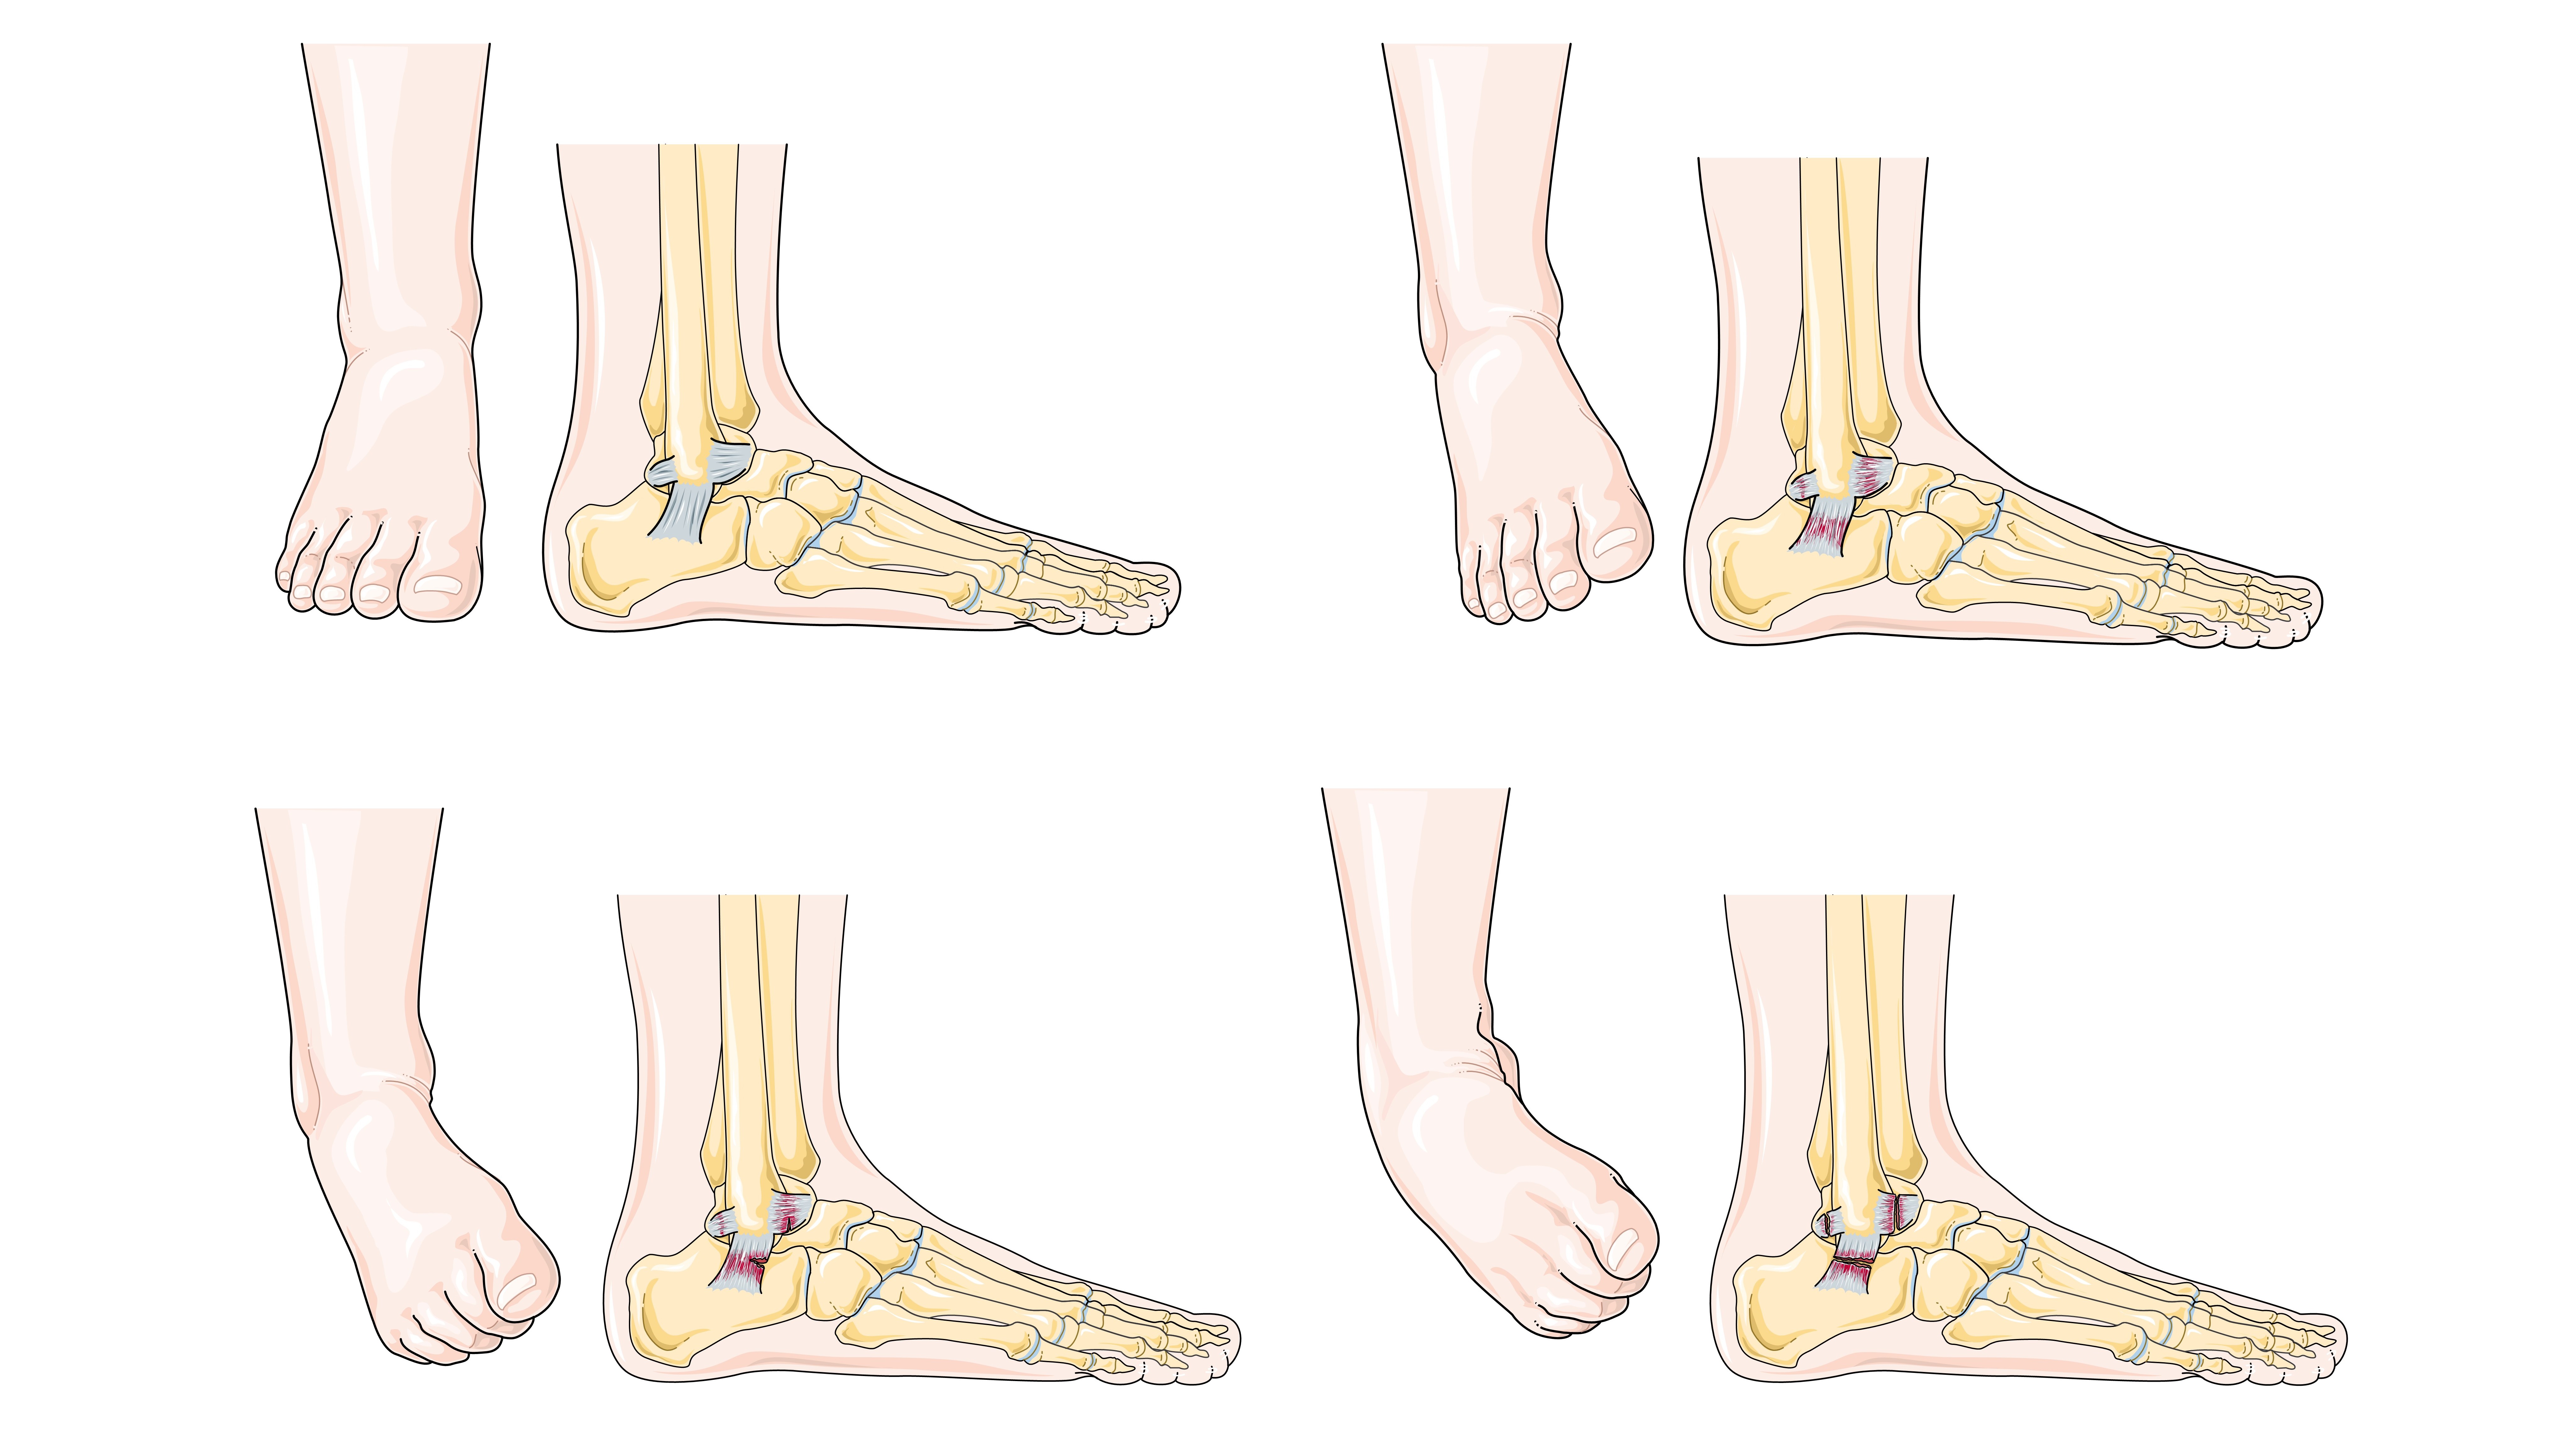 File:Ankle sprain -- Smart-Servier (cropped).jpg - Wikipedia